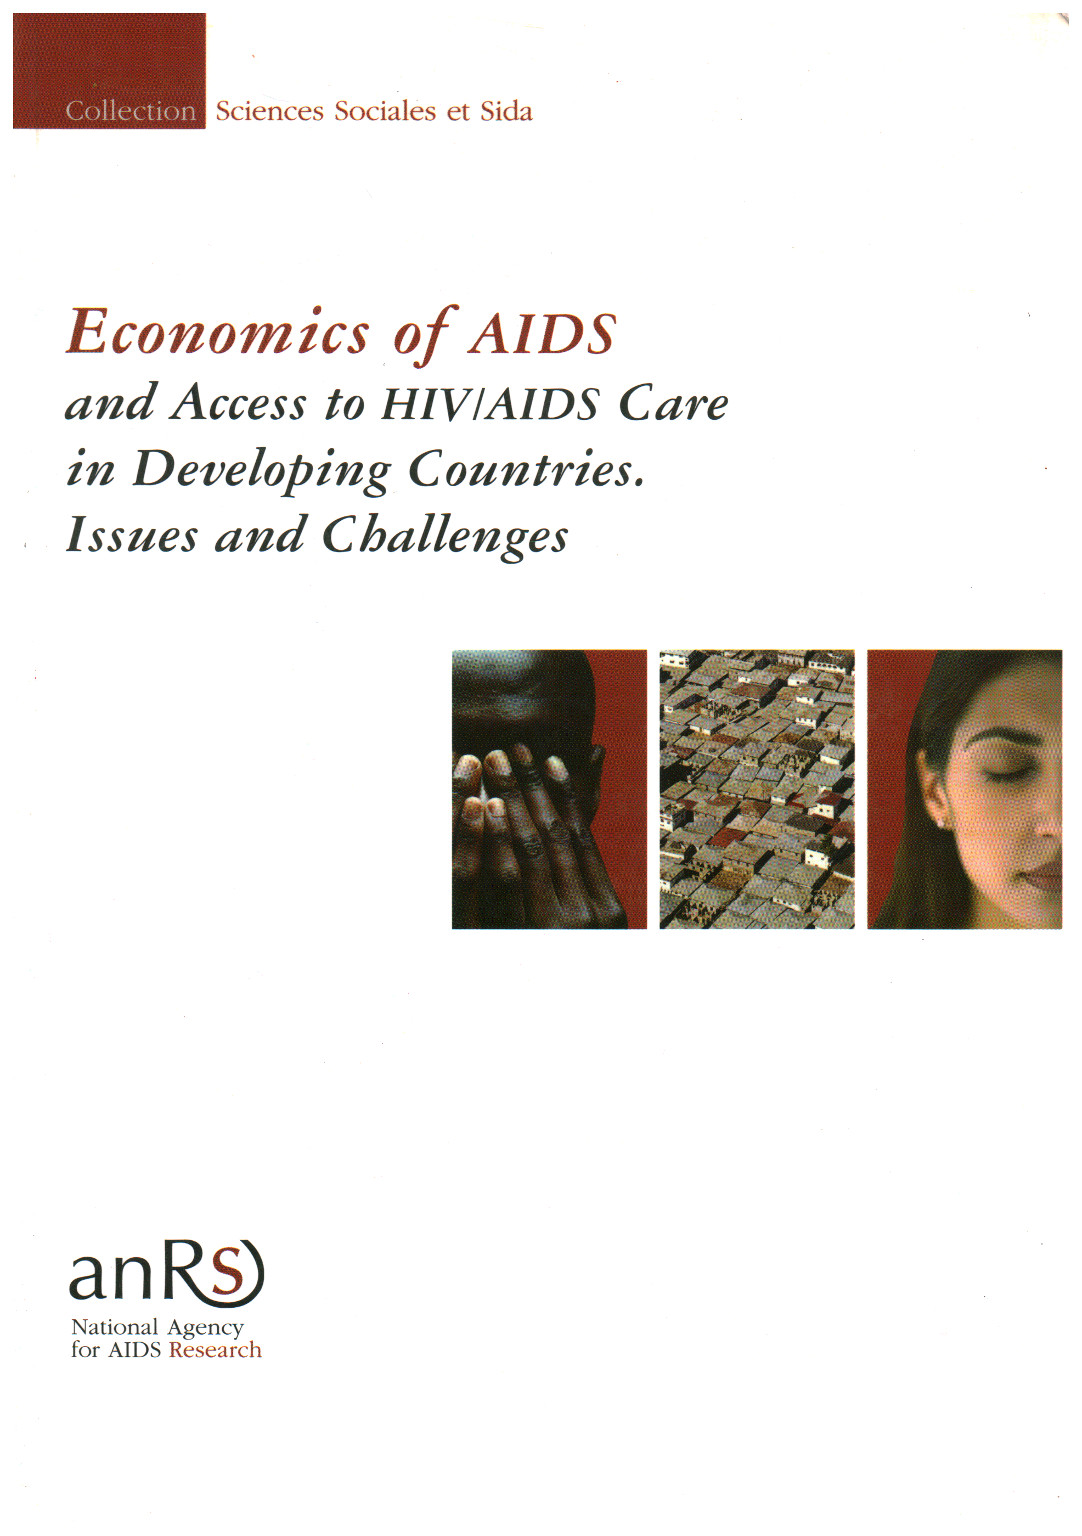 La economía de SIDA y el Acceso a la Atención del VIH/SIDA en D, s.una.